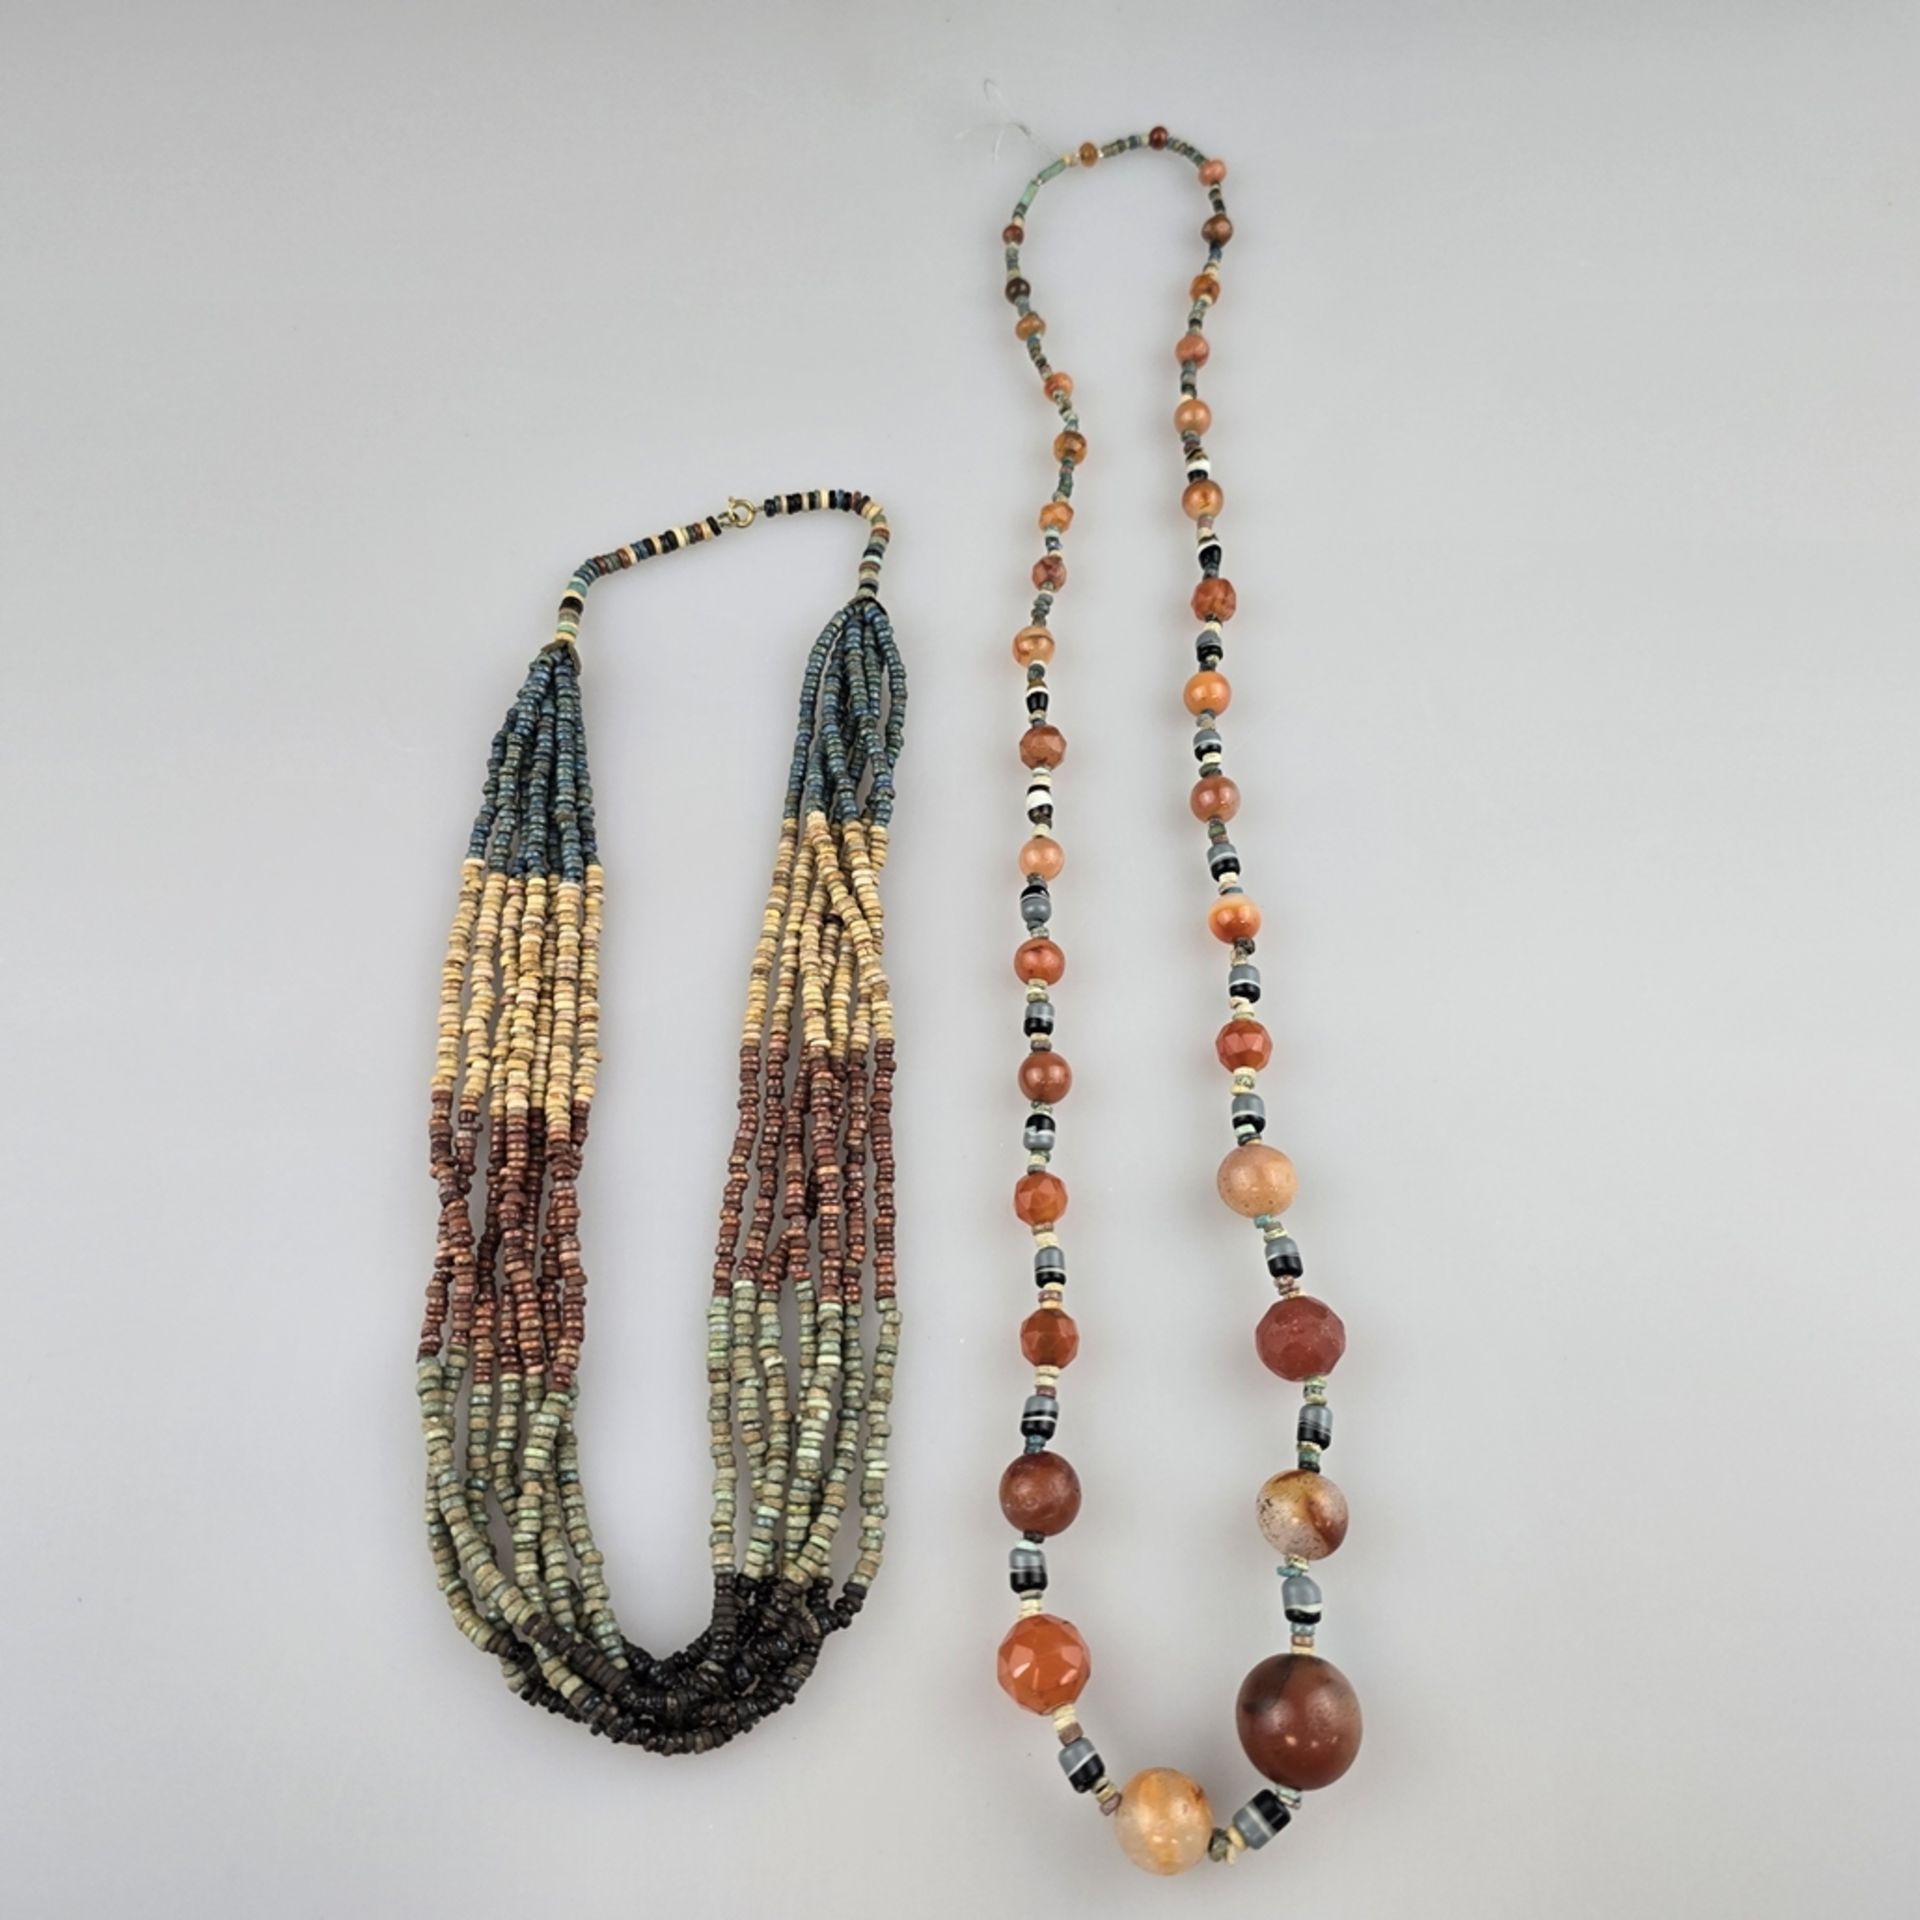 Zwei Halsketten im altägyptischen Stil - Ägypten, 1.Hälfte 20.Jh., 1 Collier aus unzähligen glasier